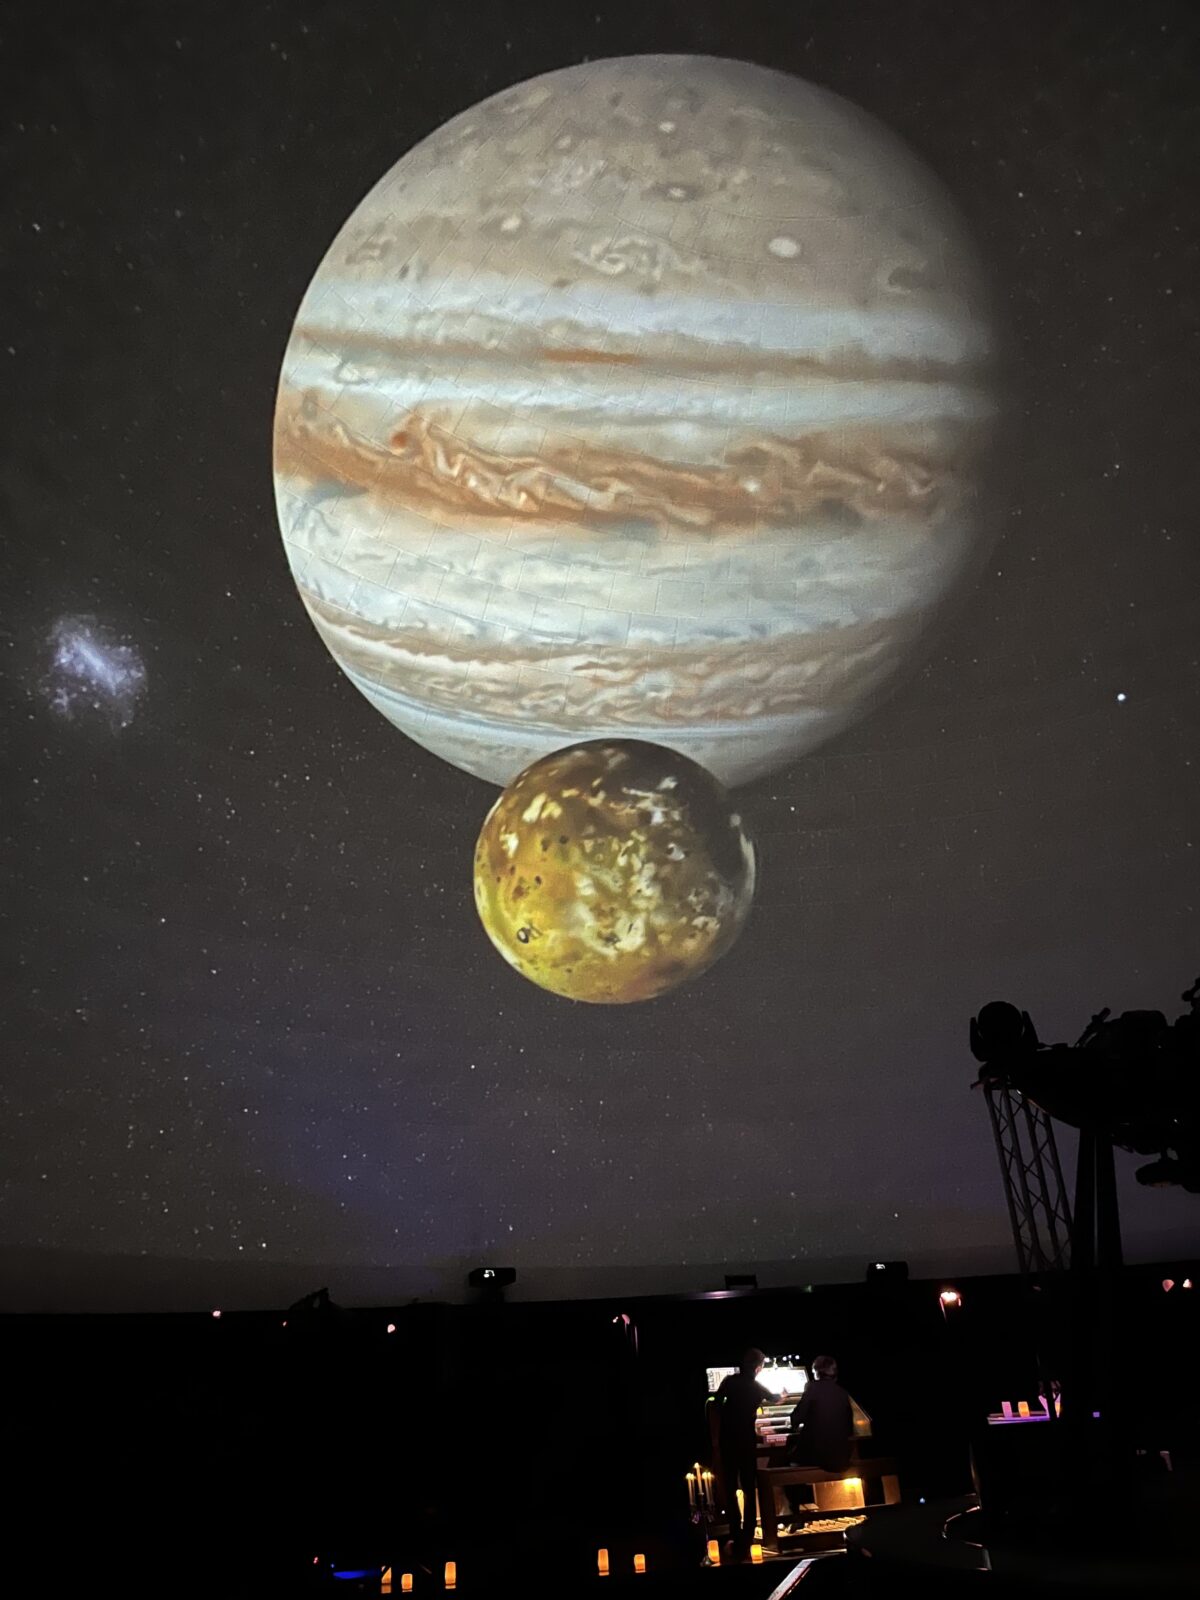 Відеоряд у зоряній залі київського планетарію під час вечірнього шоу: дві планети